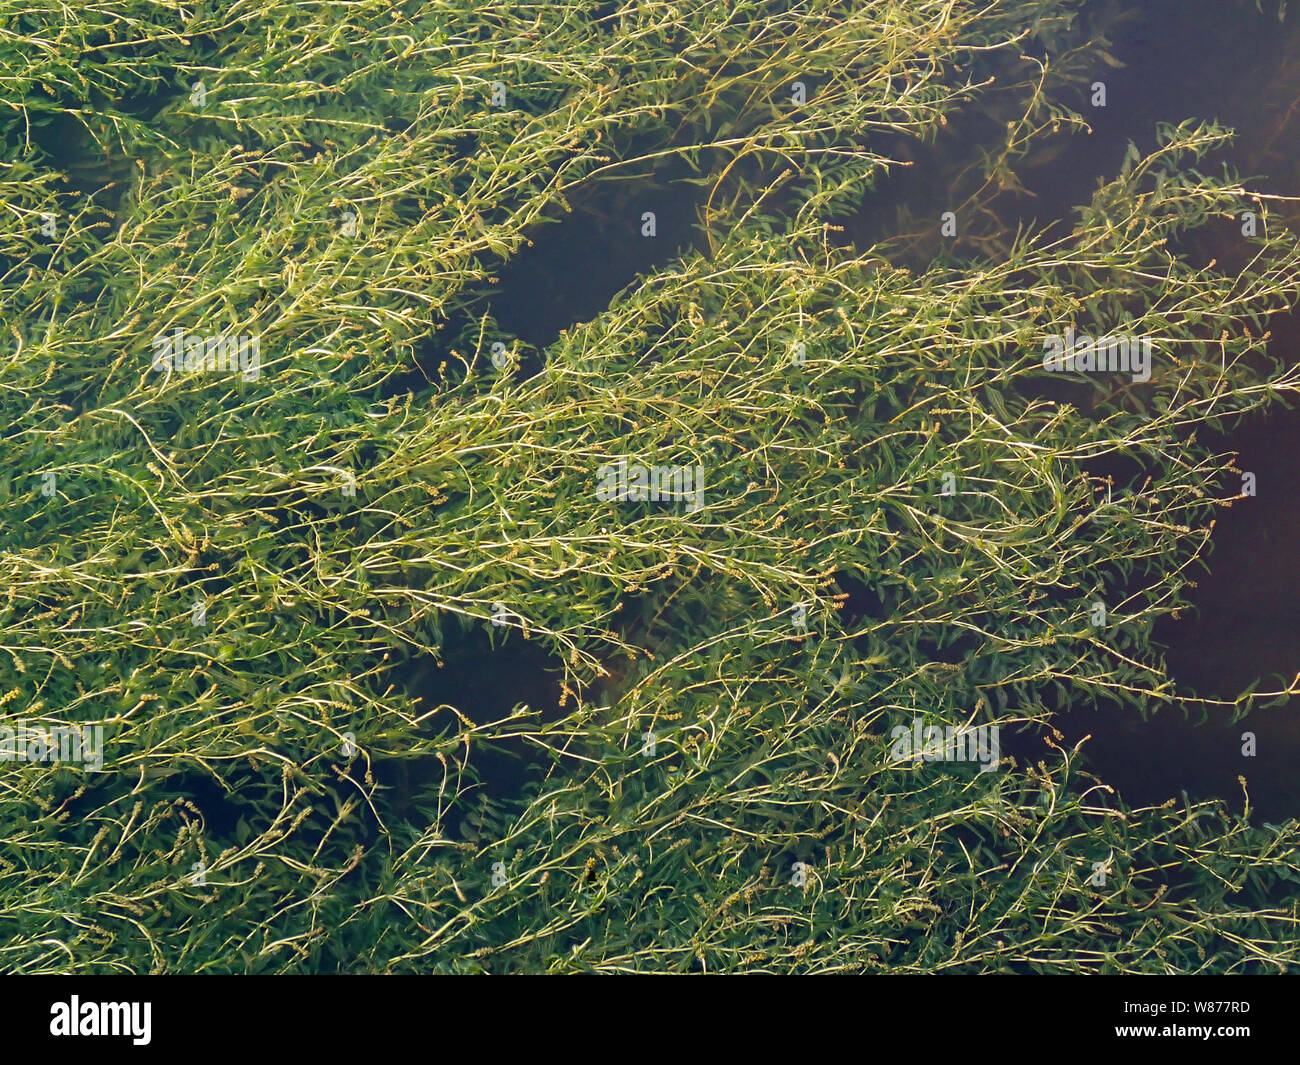 Sfondo di palude, la texture di alghe verdi in acqua Foto Stock